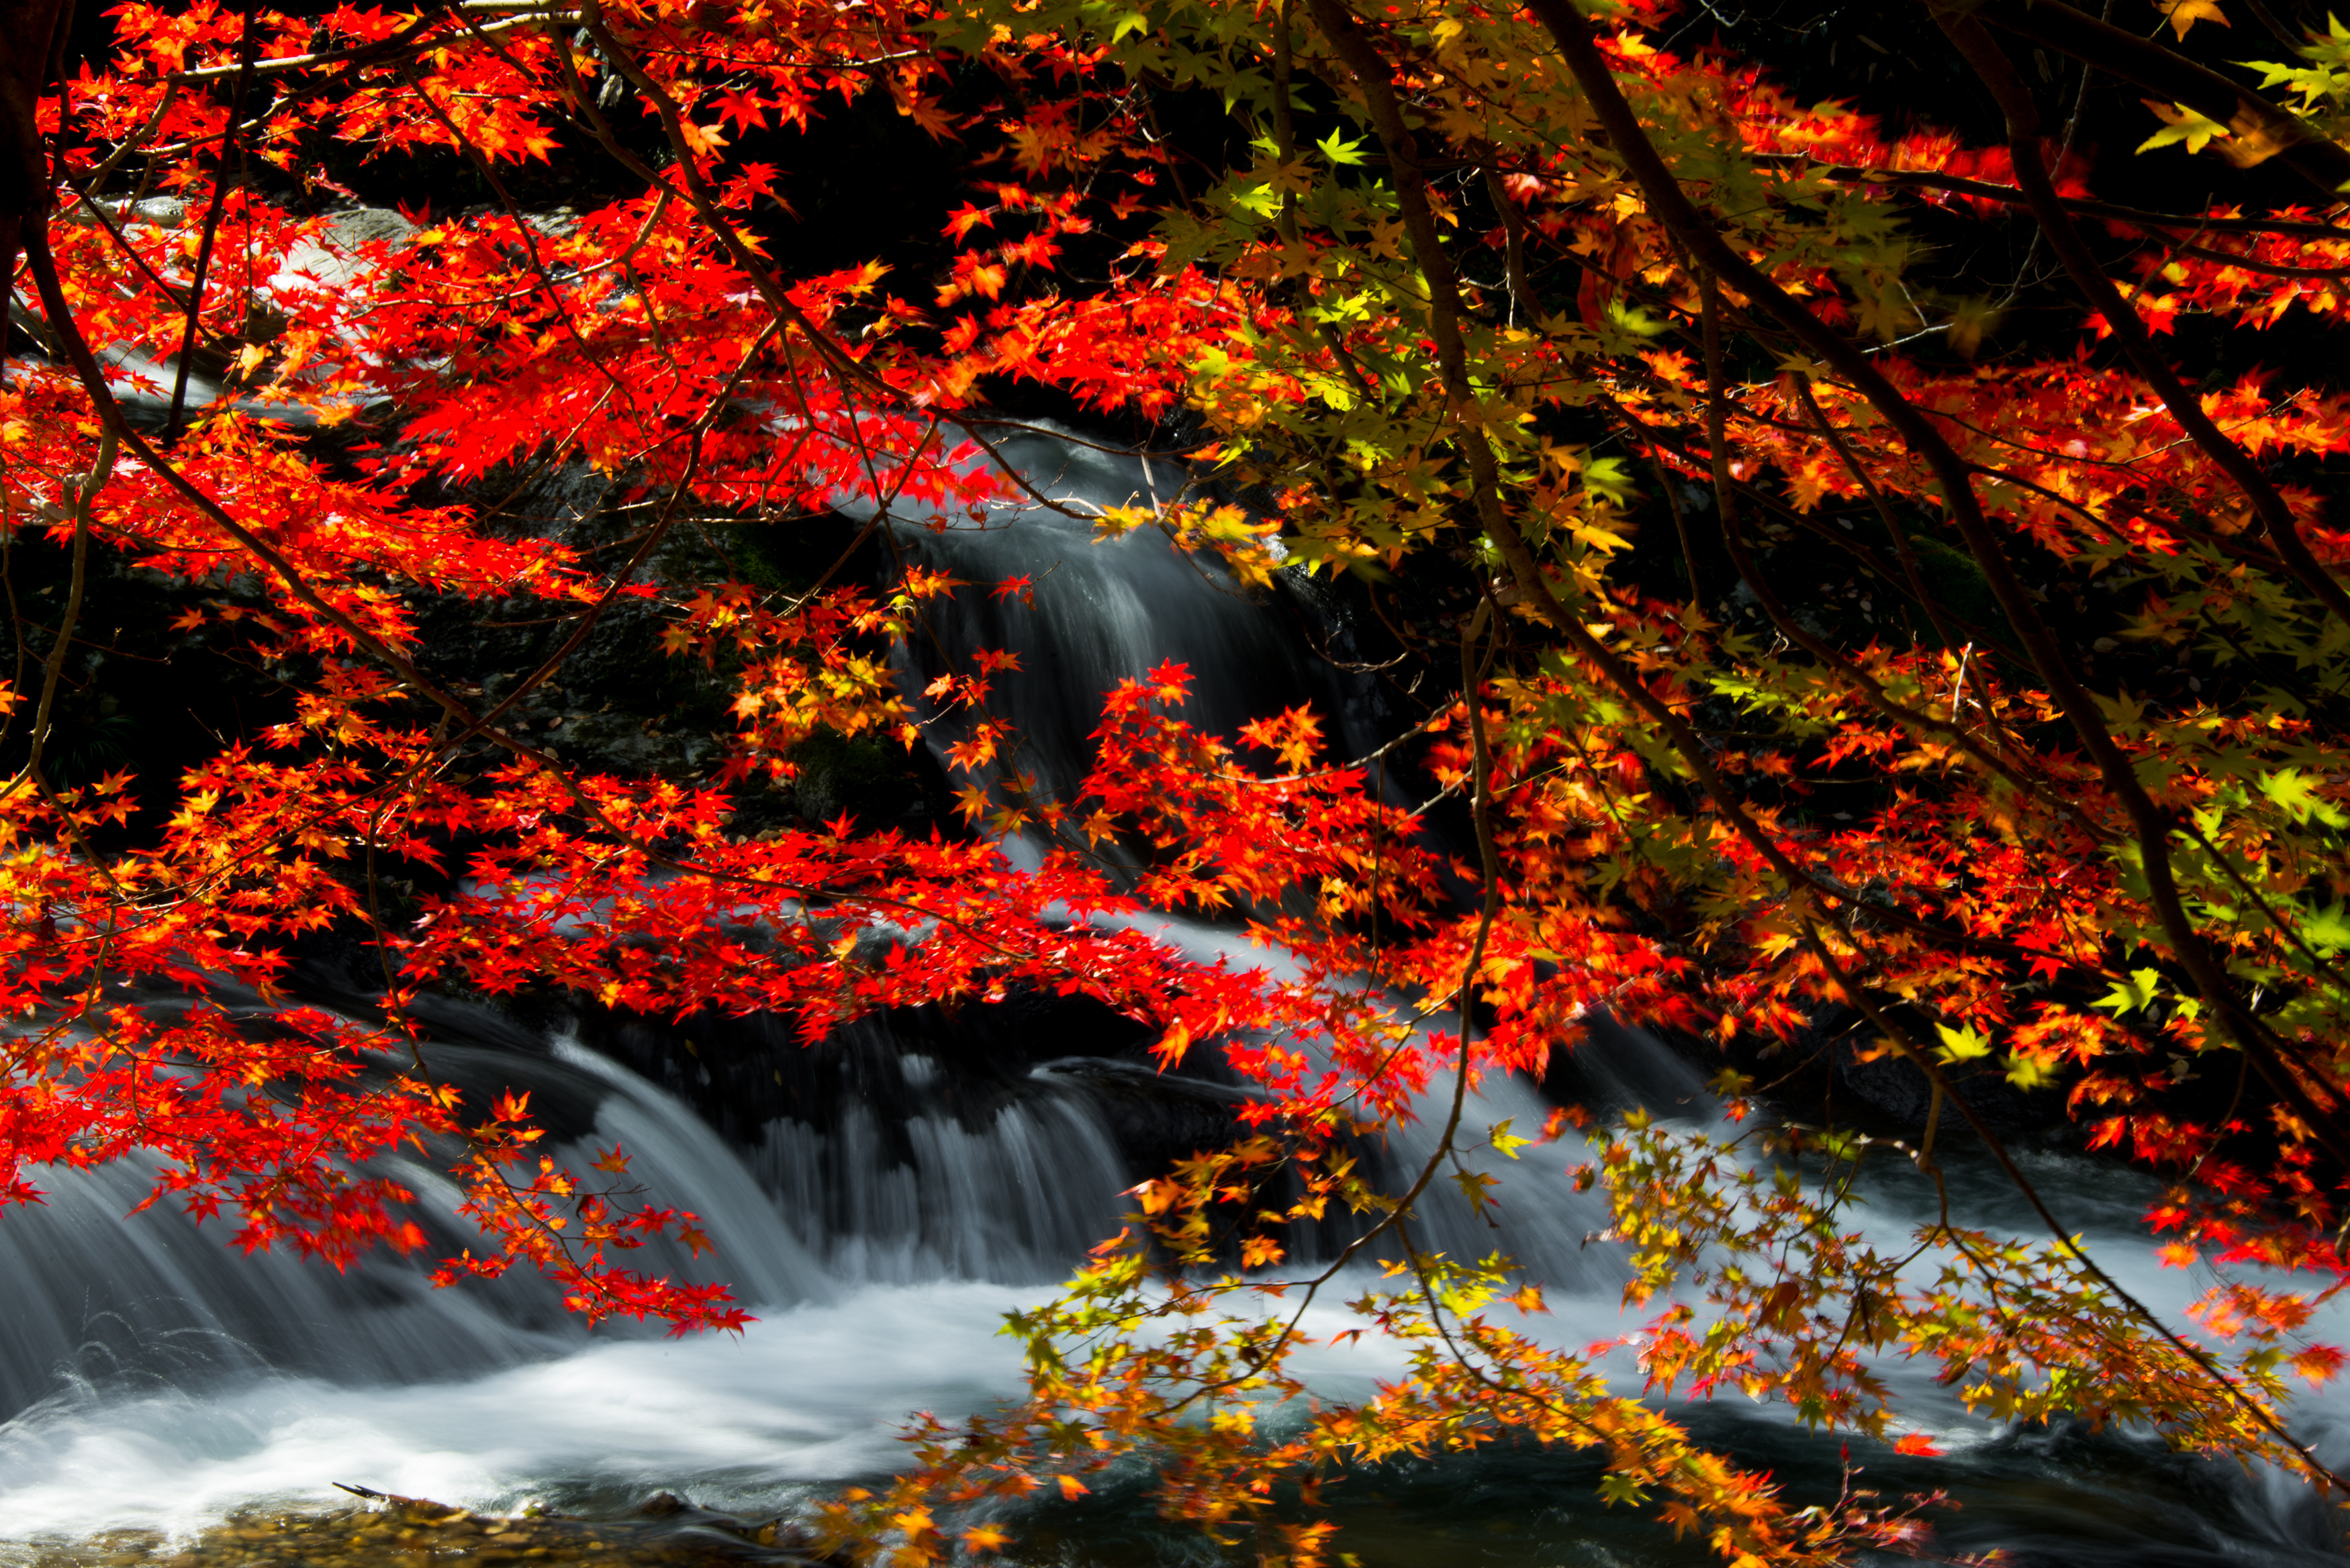 日本の風景写真5 滝の紅葉 13年11月撮影 フリー写真素材 カフィネット